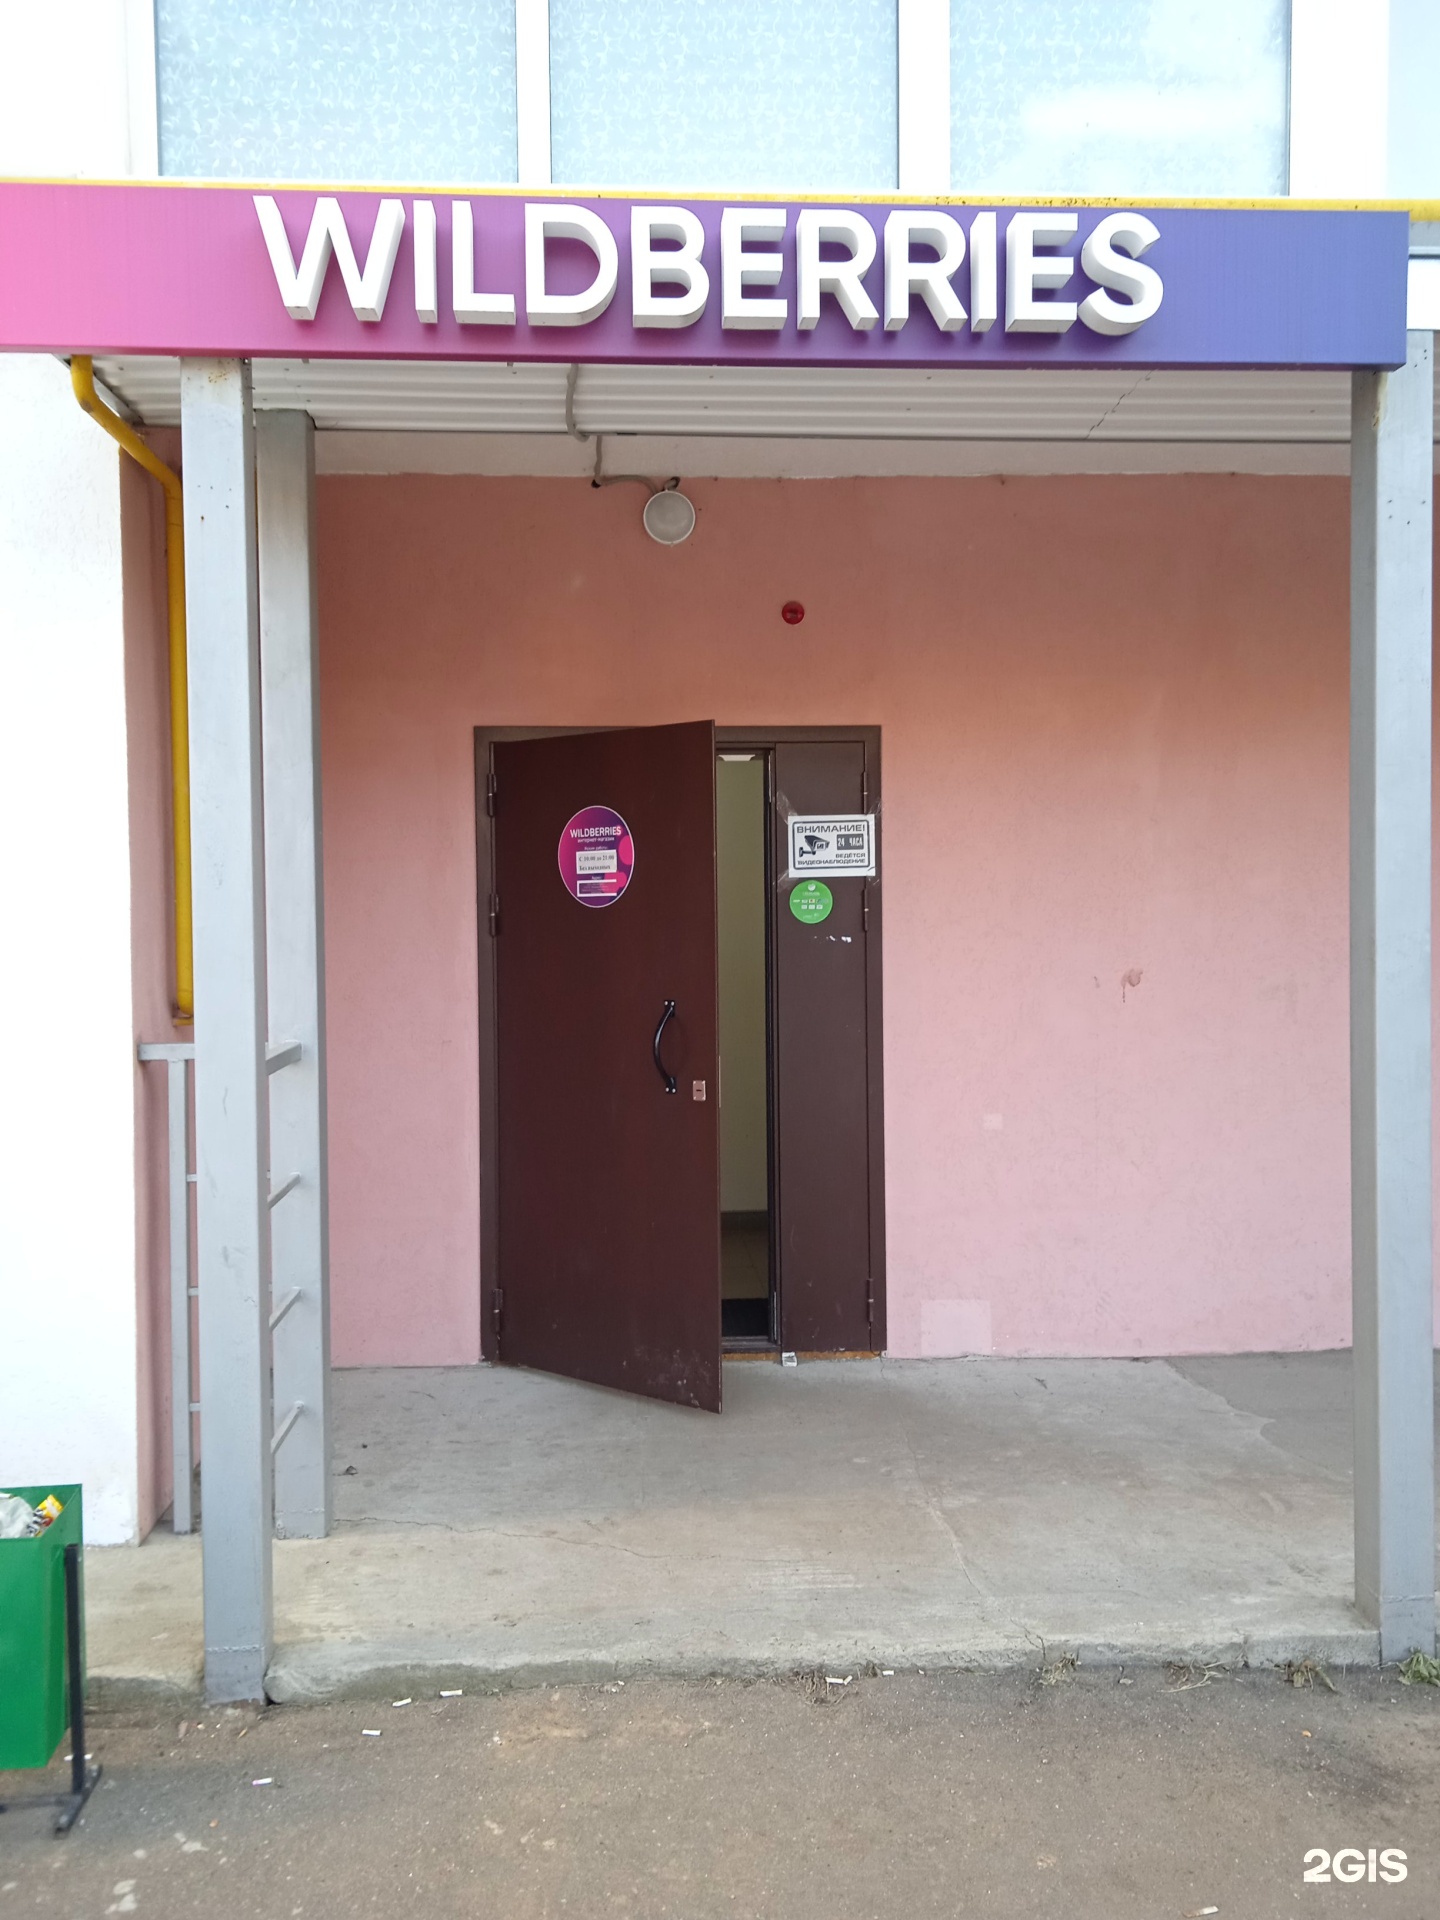 Wildberries Интернет Магазин Иваново Адреса